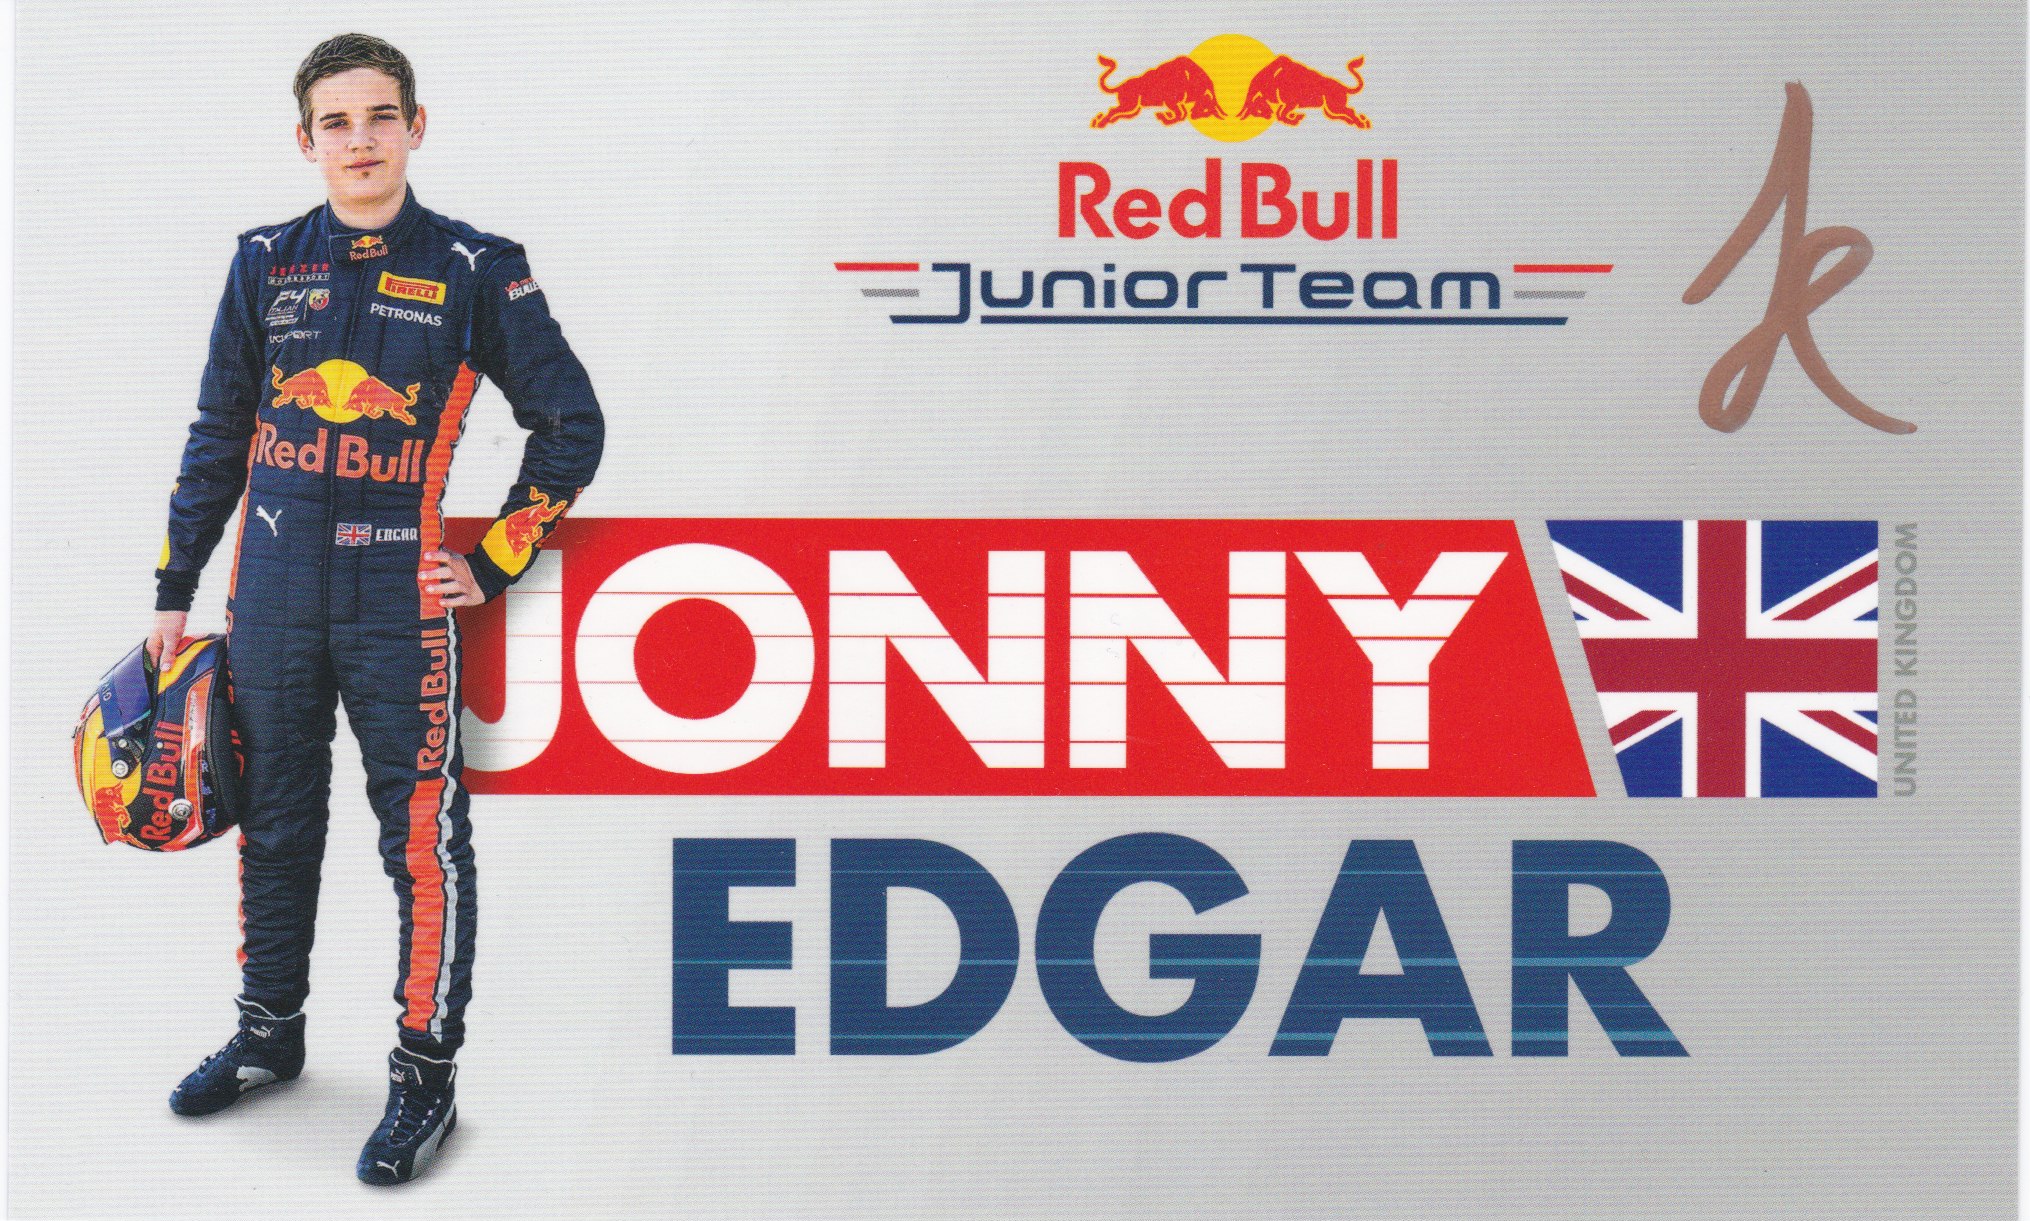 Jonny Edgar Red Bull Junior Team 2019